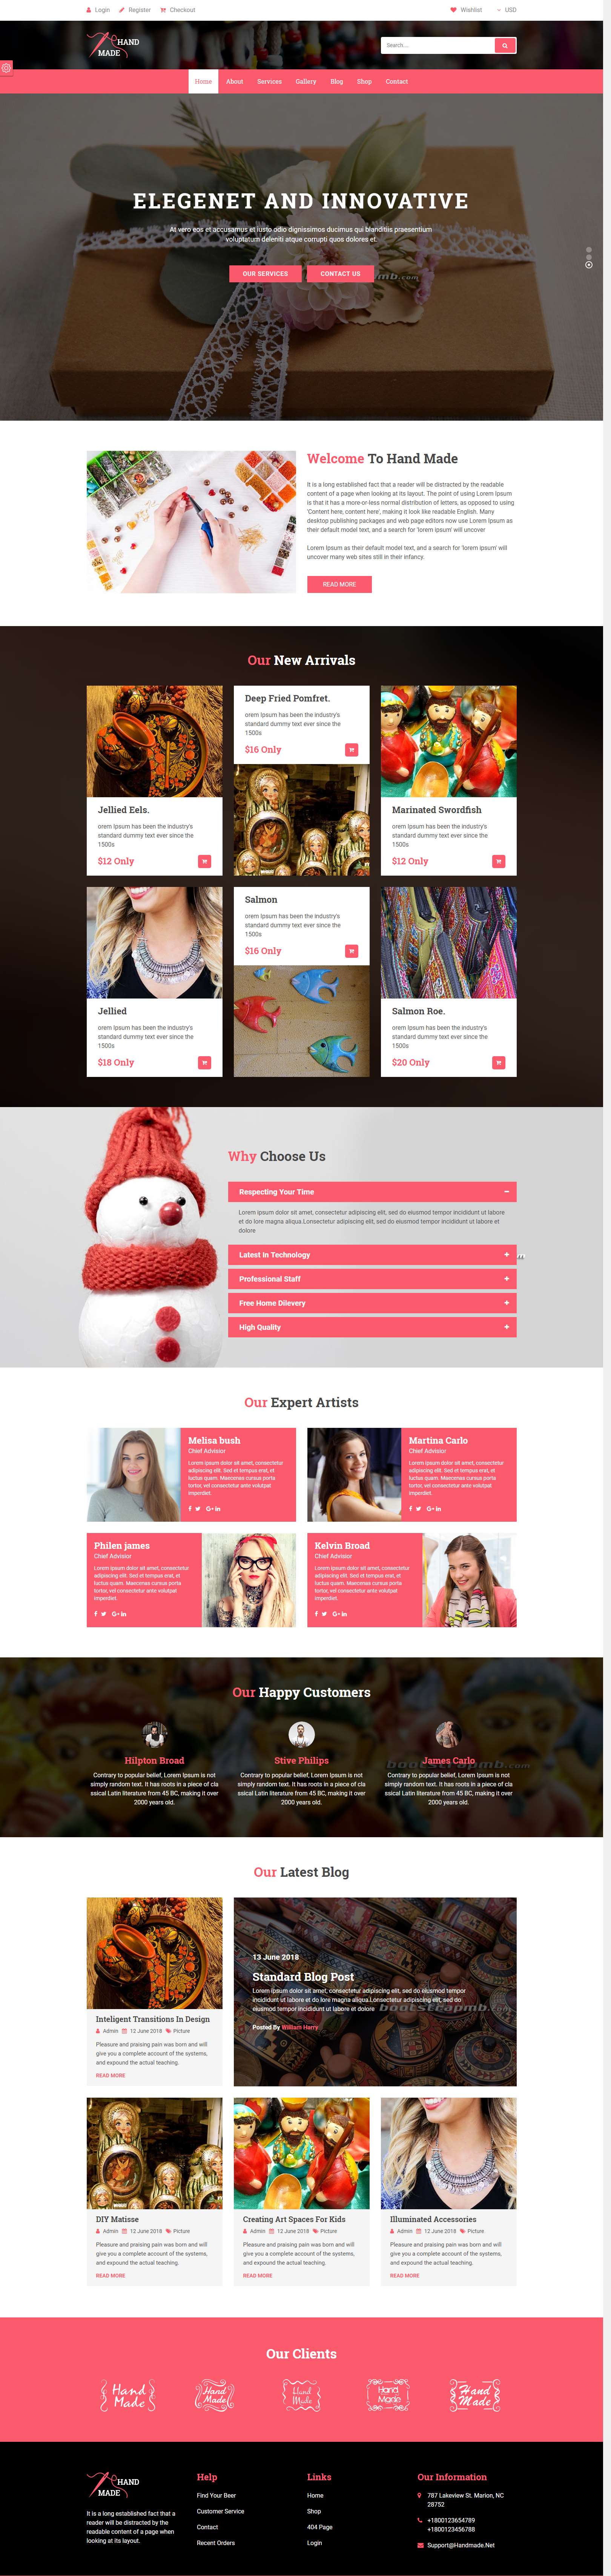 红色欧美风格的手工艺术品商店整站网站源码下载